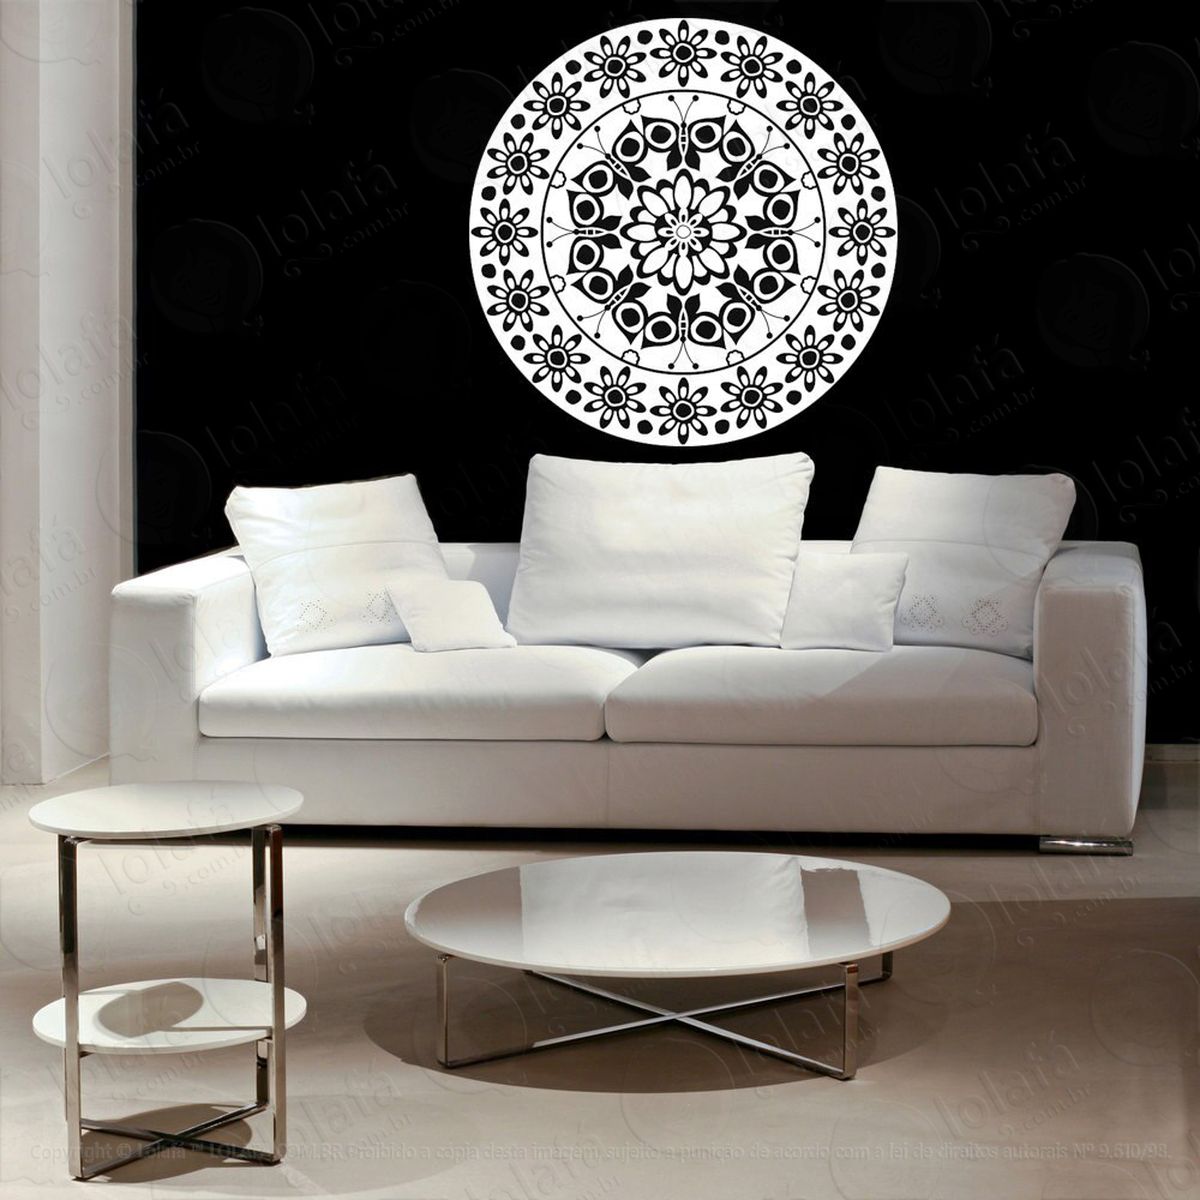 mandala seja serenidade adesivo de parede decorativo para casa, quarto, sala e vidro - mod:636